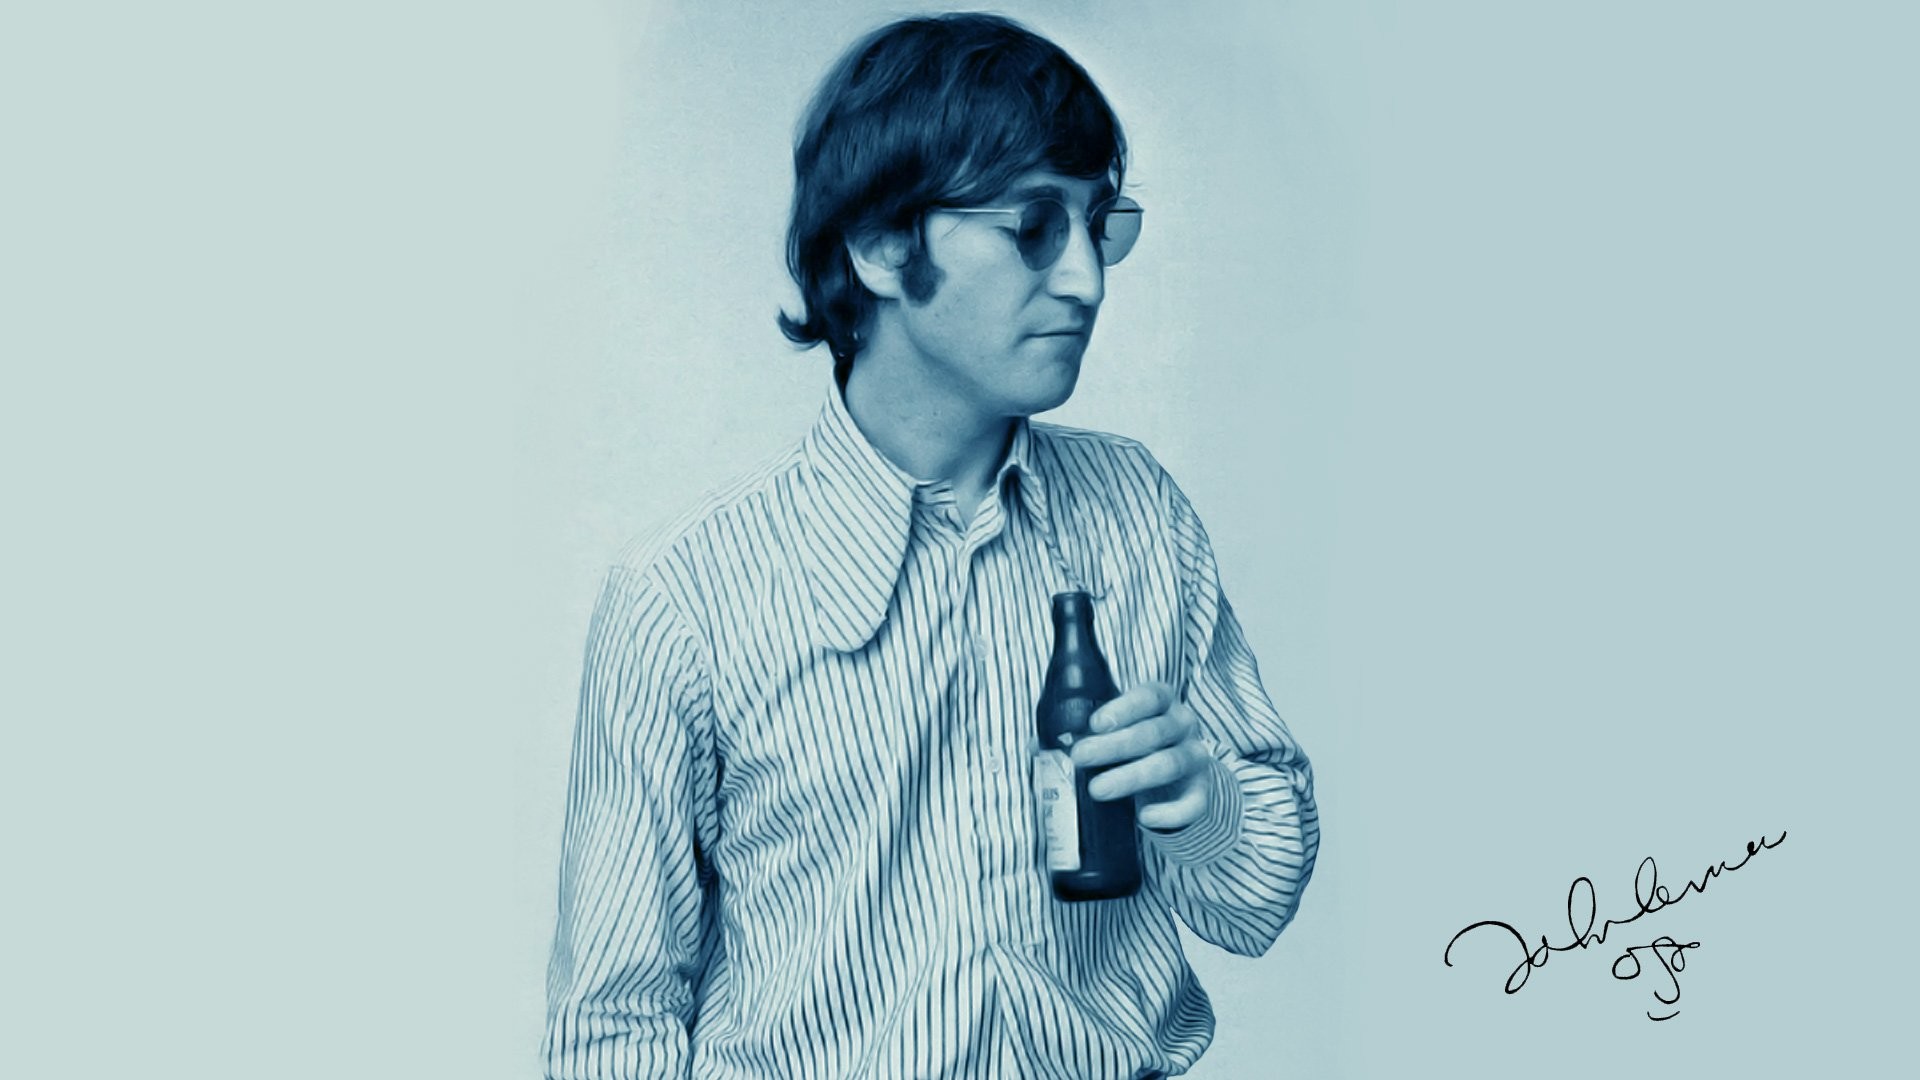 1920x1080 John Lennon Wallpapers amxxcs john lennon richard avedon wallpaper High  Quality 